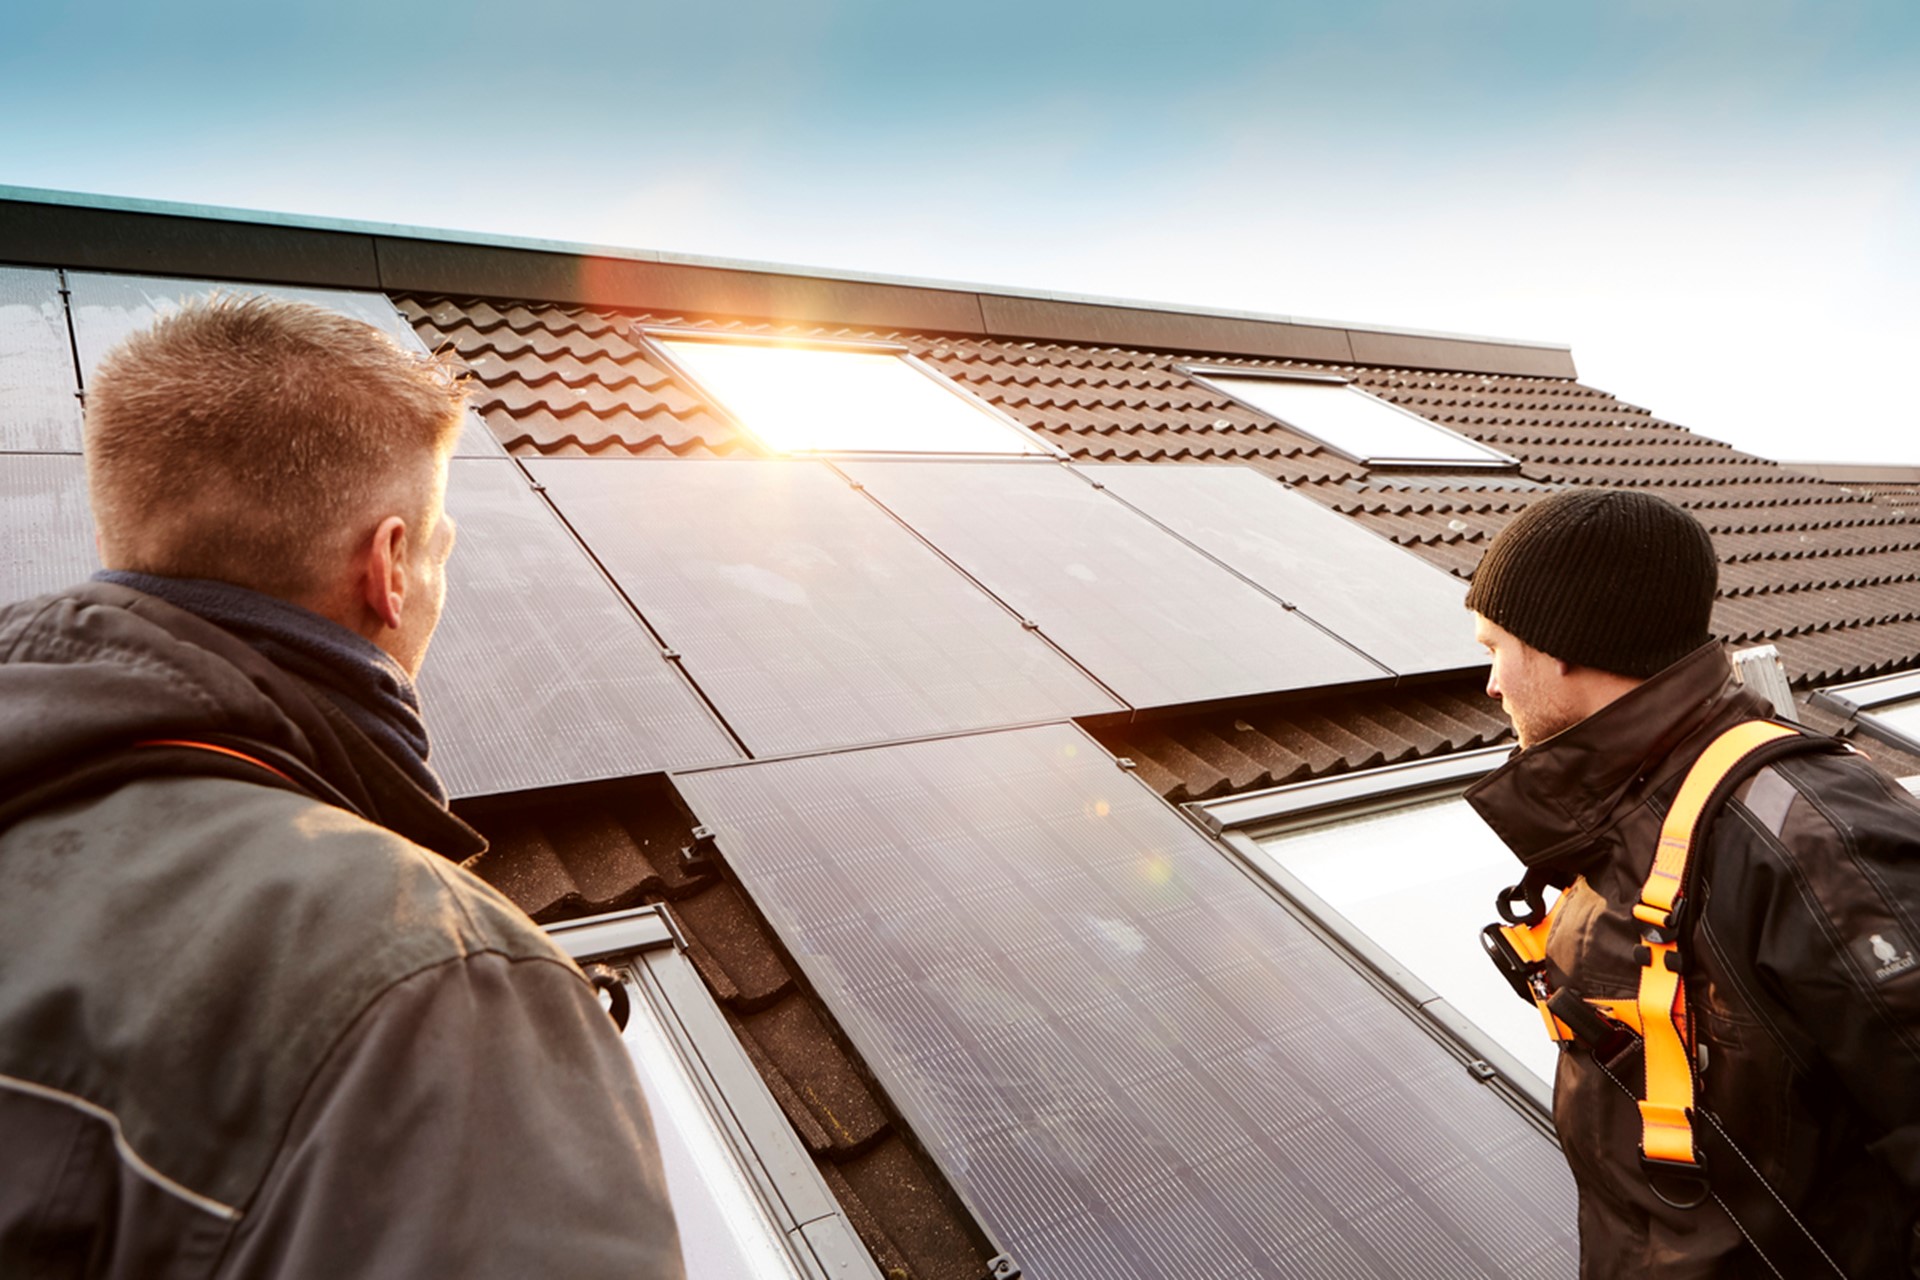 Installateurs met zonnepanelen op dak | Vattenfall Energie